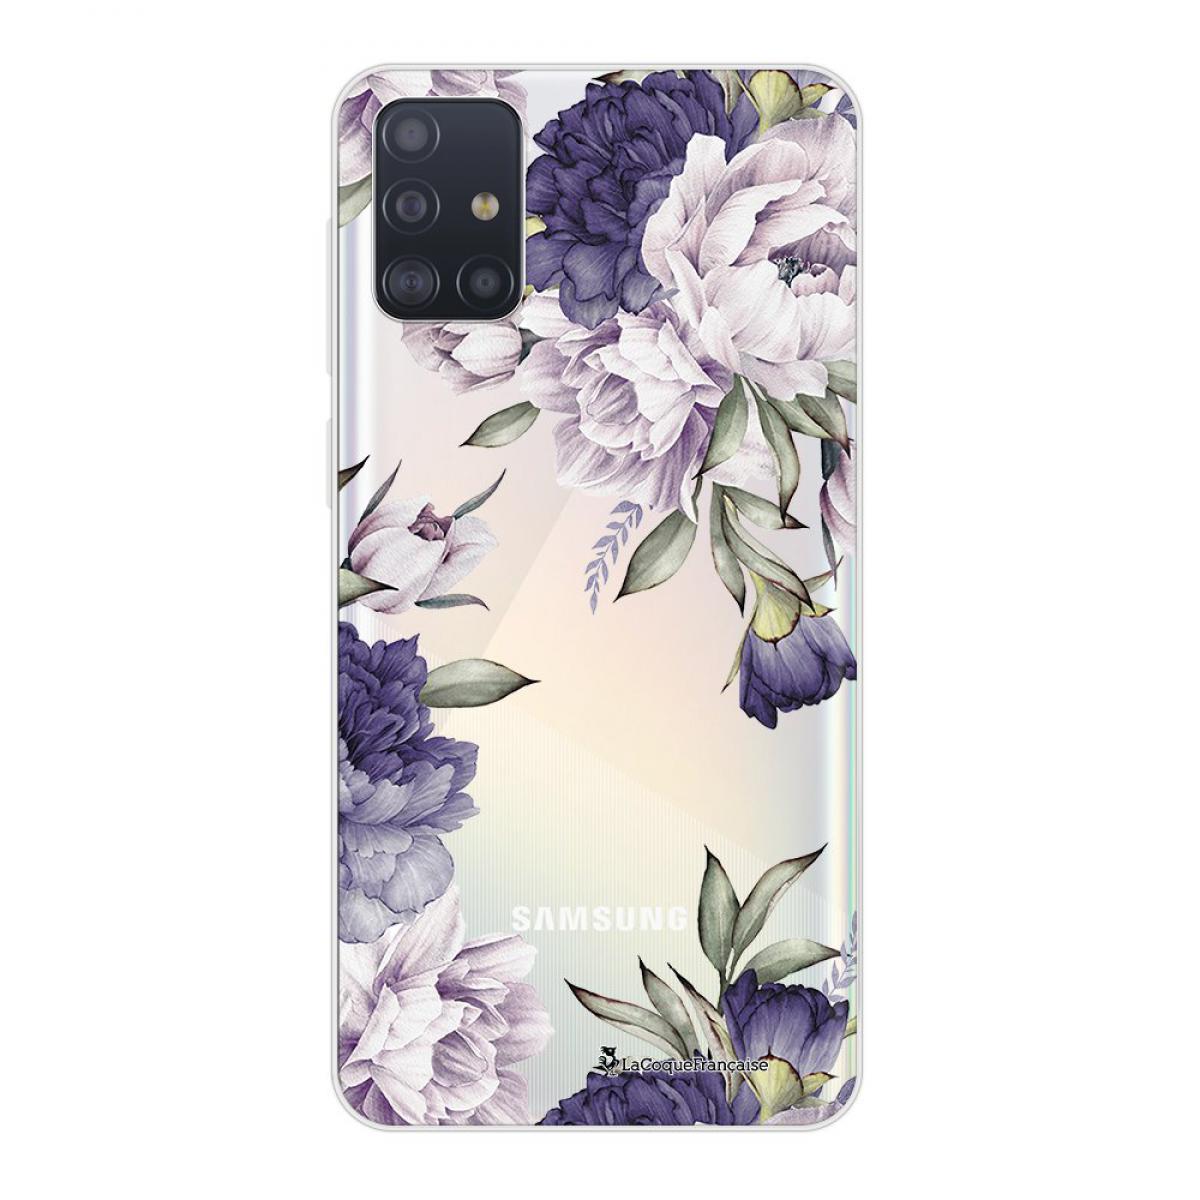 La Coque Francaise - Coque Samsung Galaxy A51 5G souple transparente Pivoines Violettes Motif Ecriture Tendance La Coque Francaise - Coque, étui smartphone